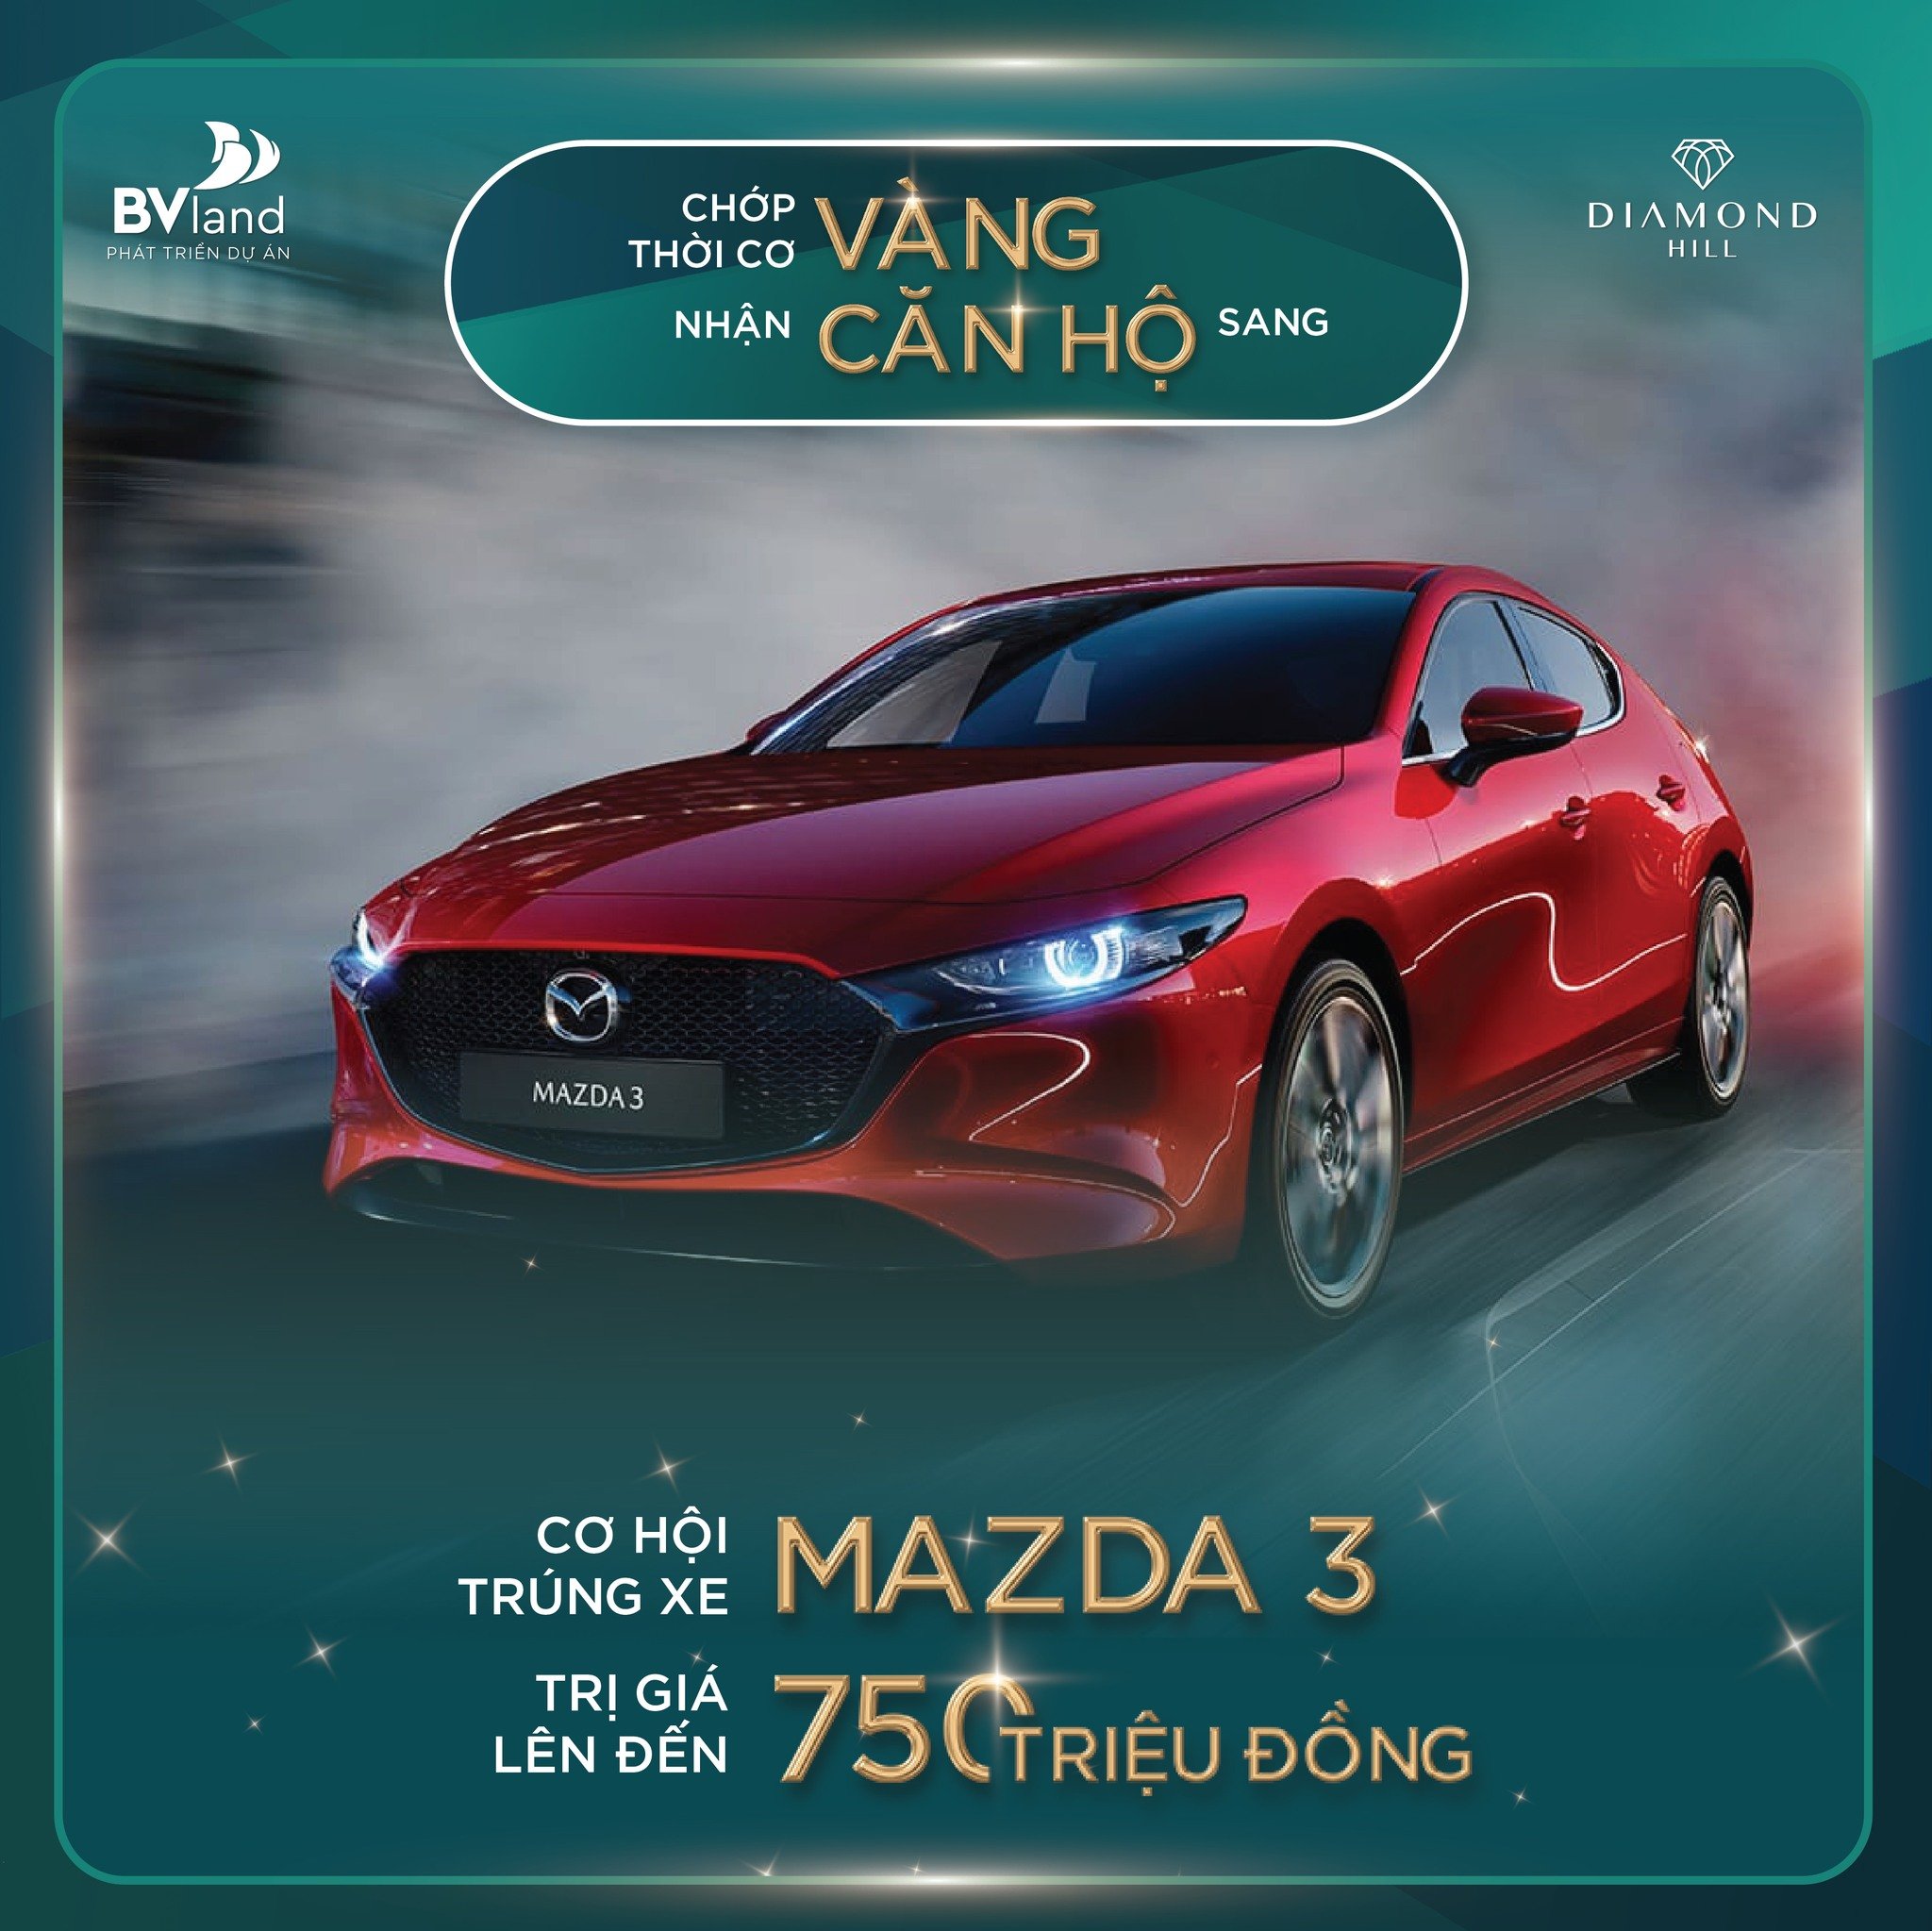 Cơ hội trúng xem Mazda 3 trị giá 750 triệu khi mua nhà Diamond Hill - TP Bắc Giang 1